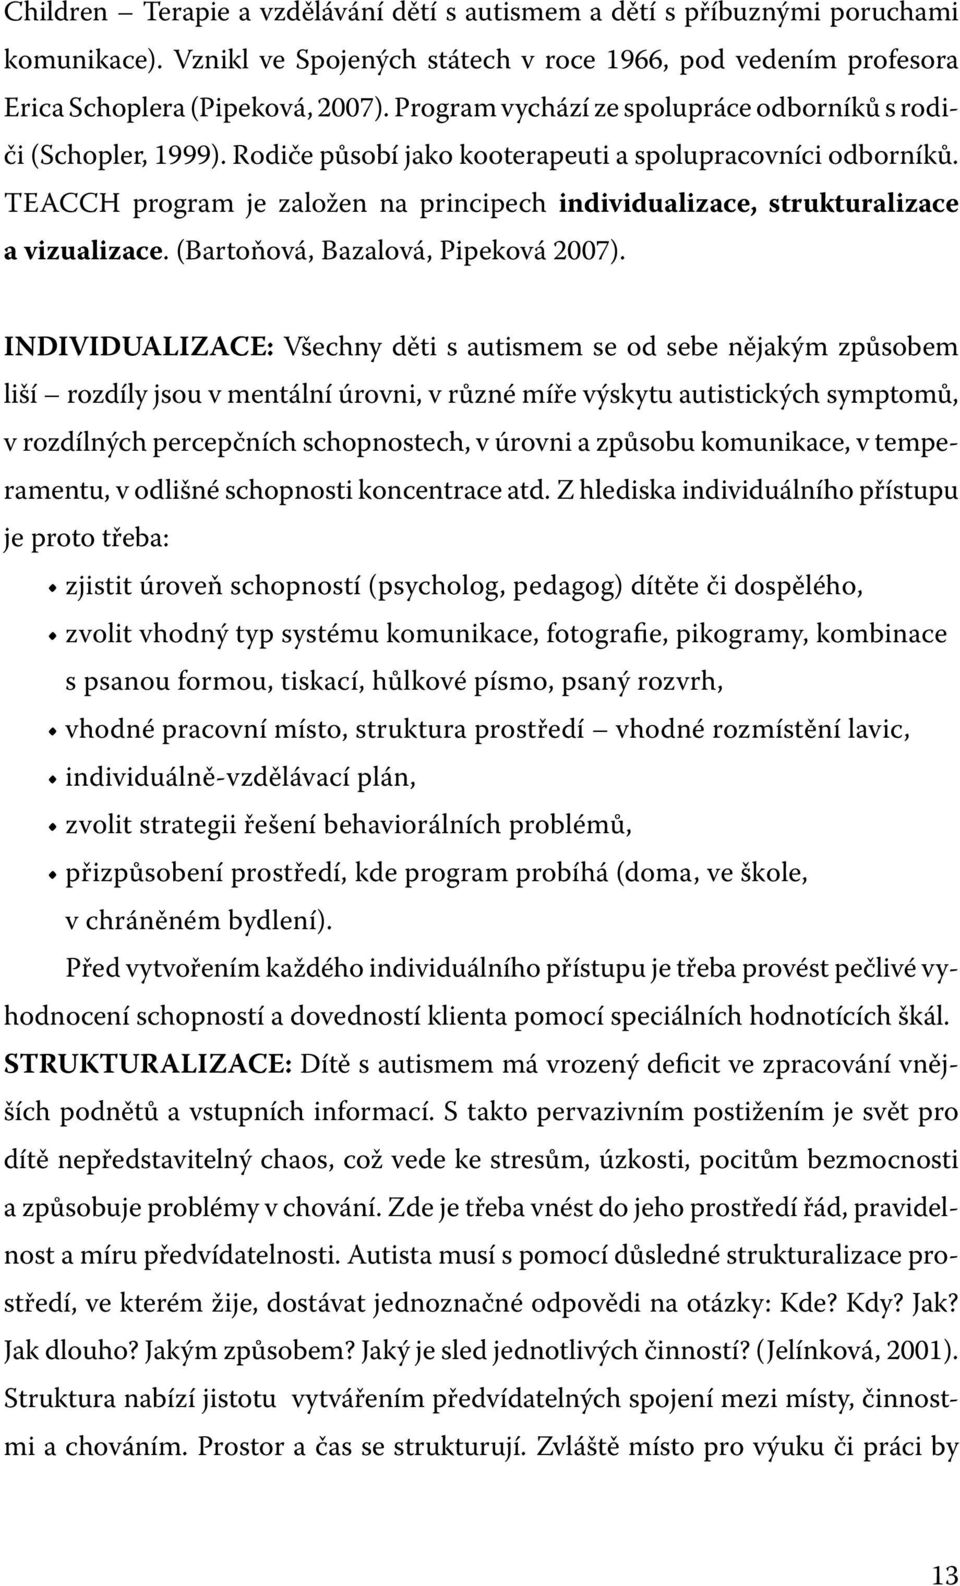 TEACCH program je založen na principech individualizace, strukturalizace a vizualizace. (Bartoňová, Bazalová, Pipeková 2007).